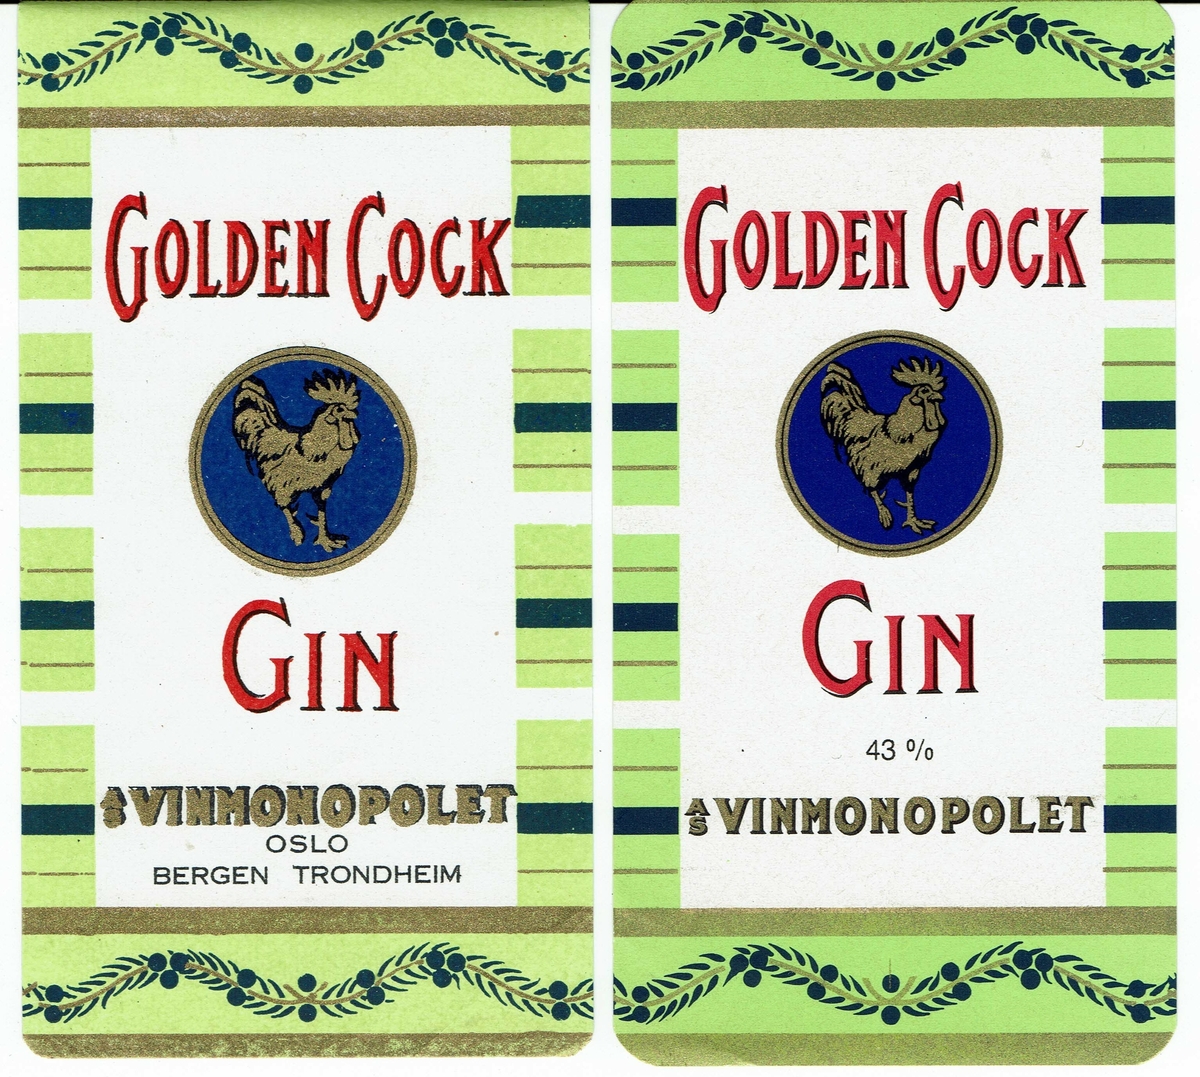 Golden Cock Gin. AS Vinmonopolet. 